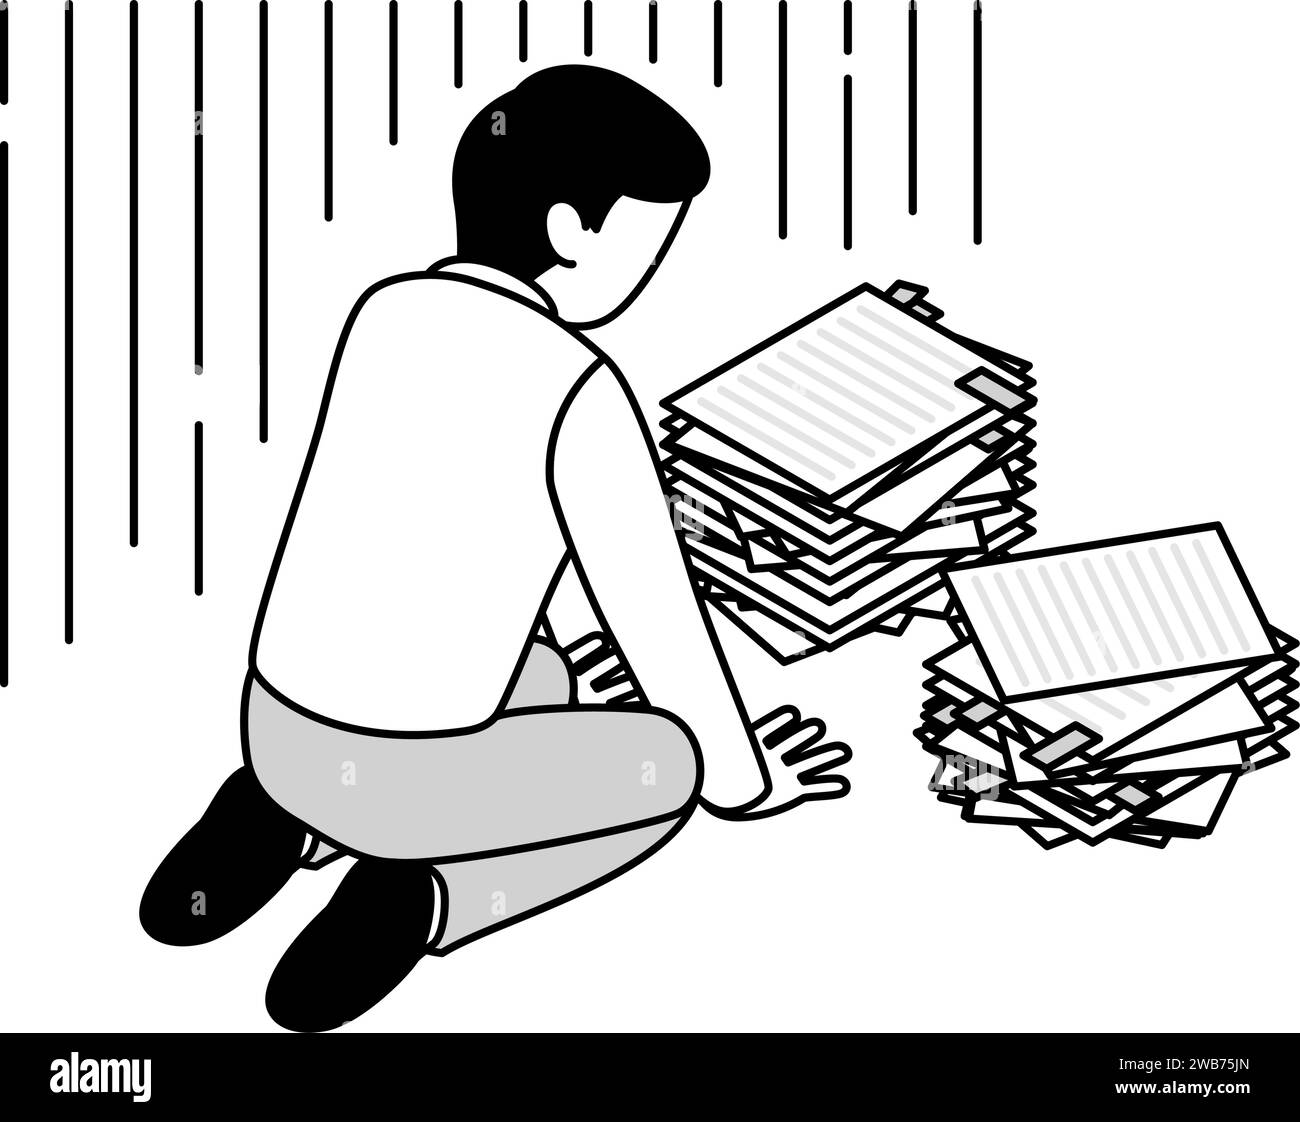 Illustration simple de dessin de ligne d'un homme fatigué des heures supplémentaires lâcher devant une pile de papiers. Illustration de Vecteur